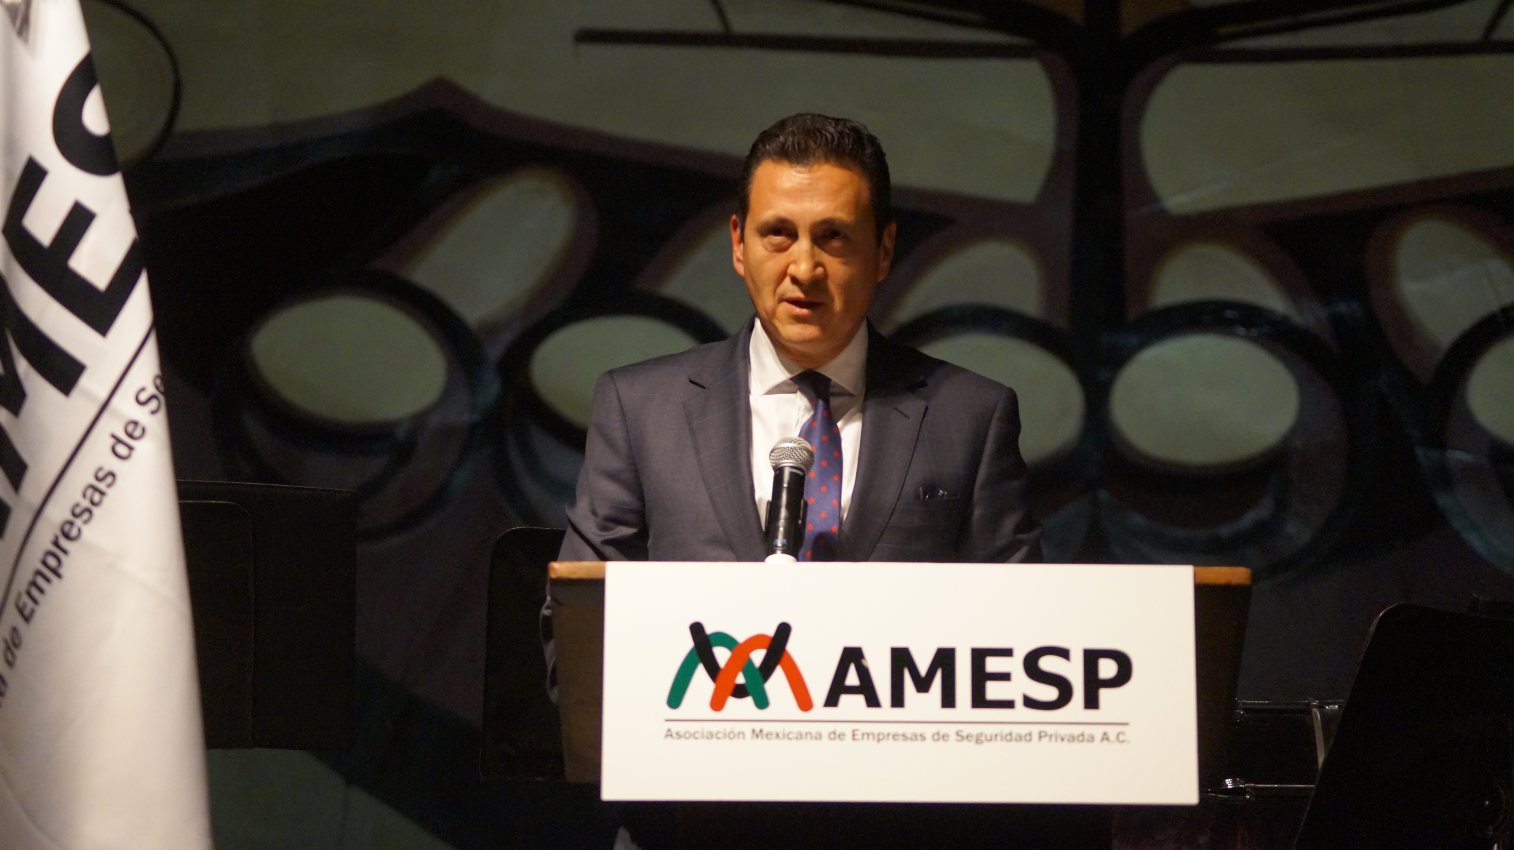 Reitera AMESP su ofrecimiento de contribuir con las autoridades a la pacificación y mejora de la seguridad del país